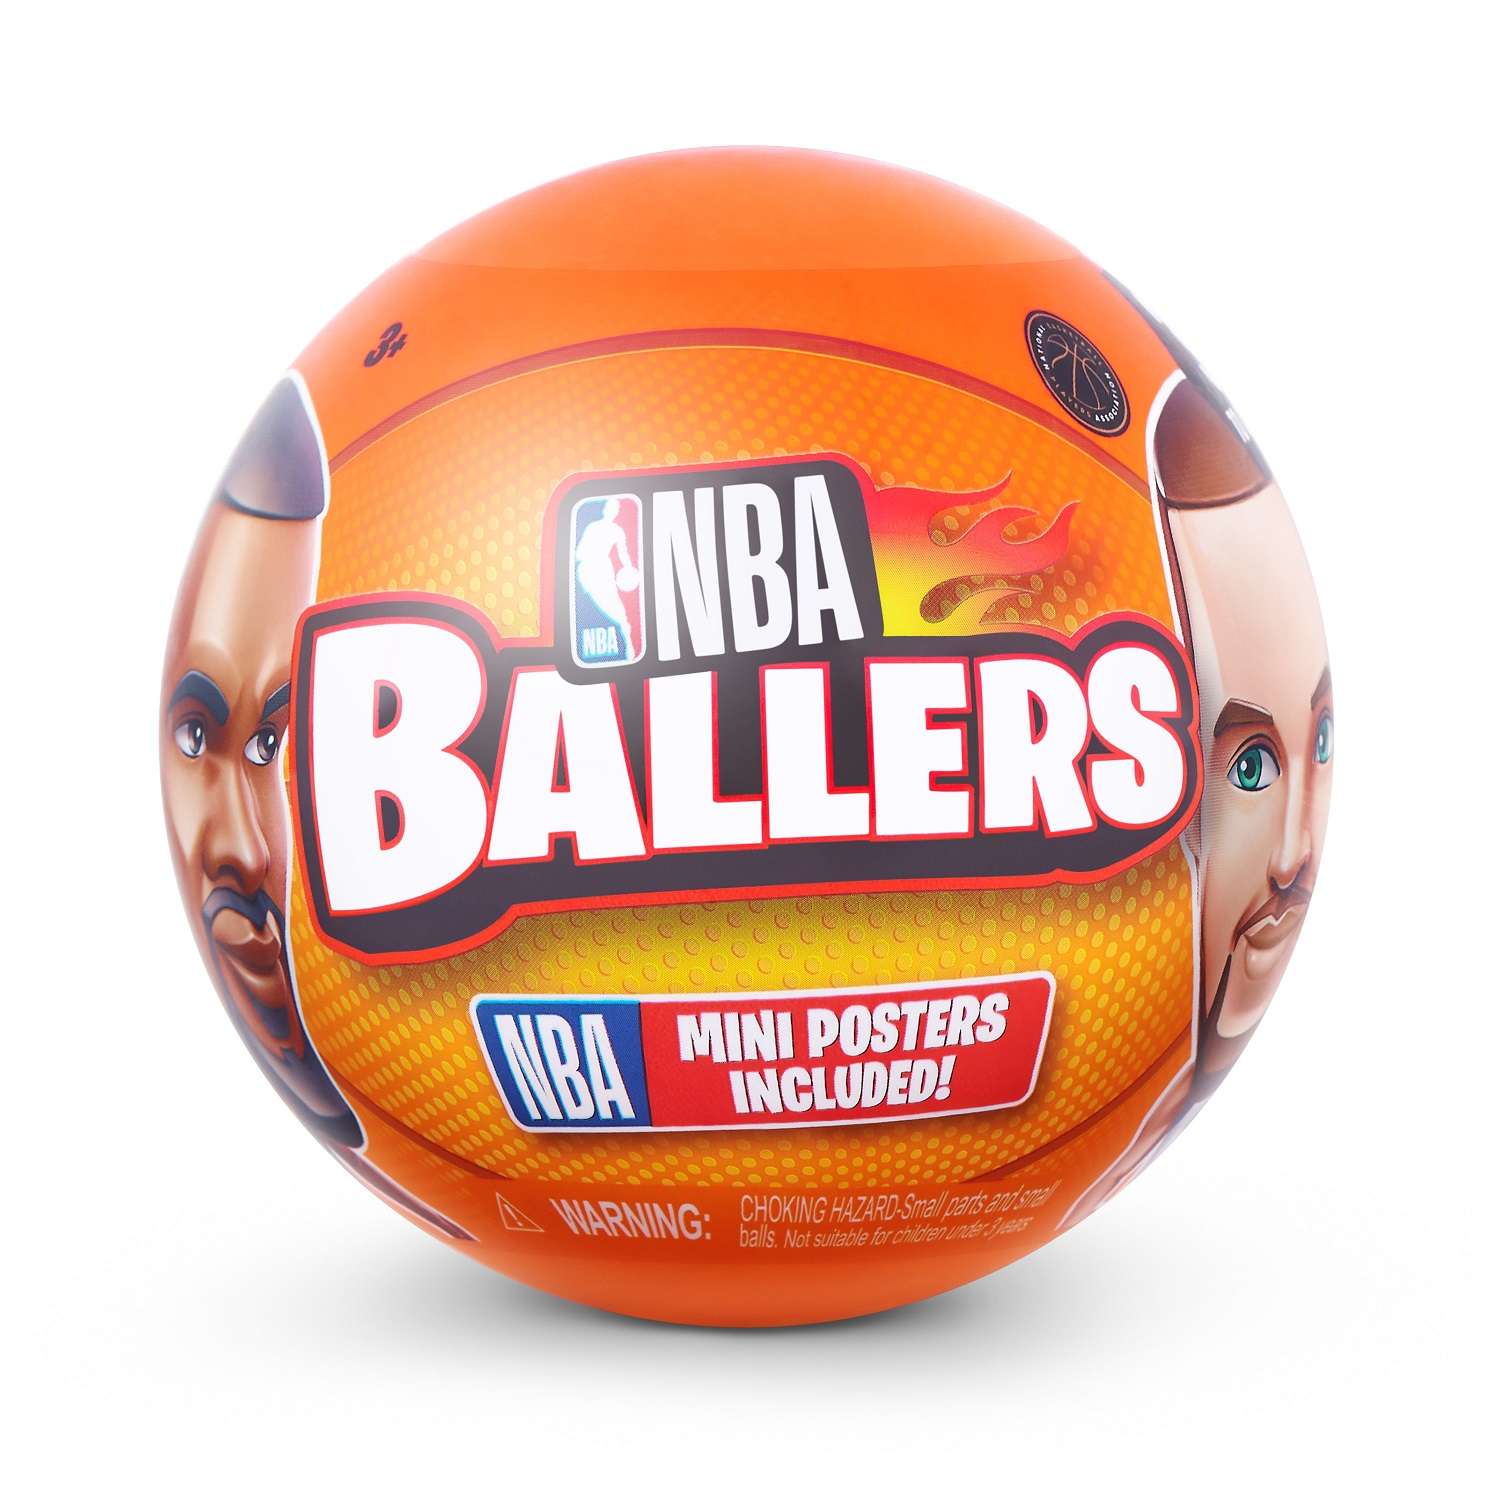 Игрушка Zuru 5 surprise NBA Ballers Шар в непрозрачной упаковке (Сюрприз) 77490GQ4-S002 - фото 1